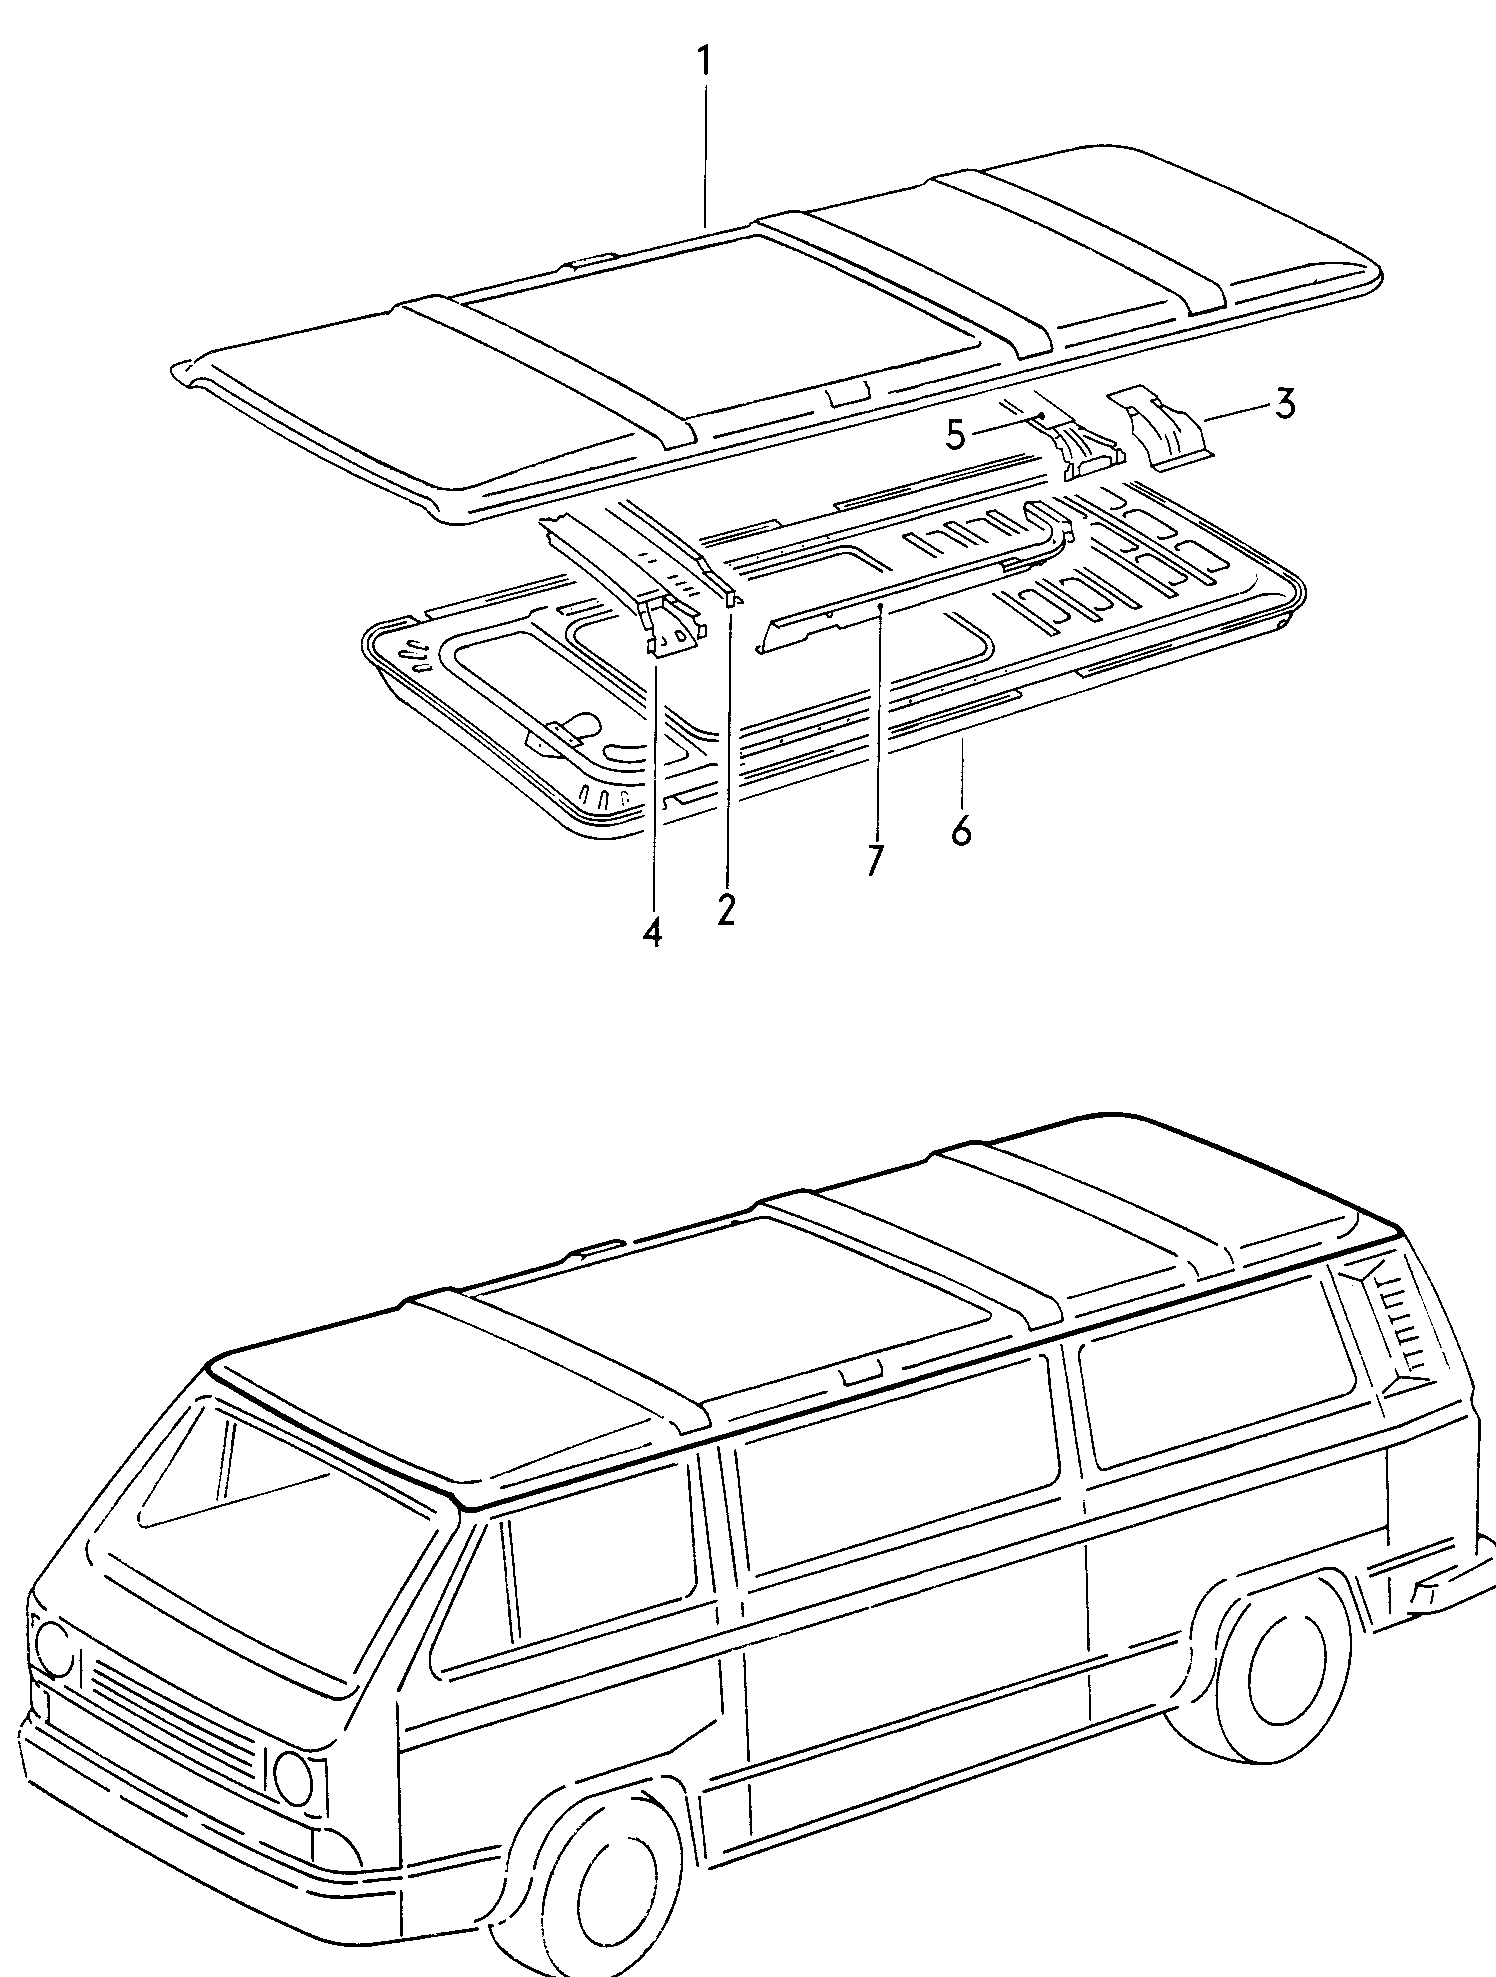 dakvoor wagens met handbediend<br>schuifdak  - Typ 2/syncro - t2